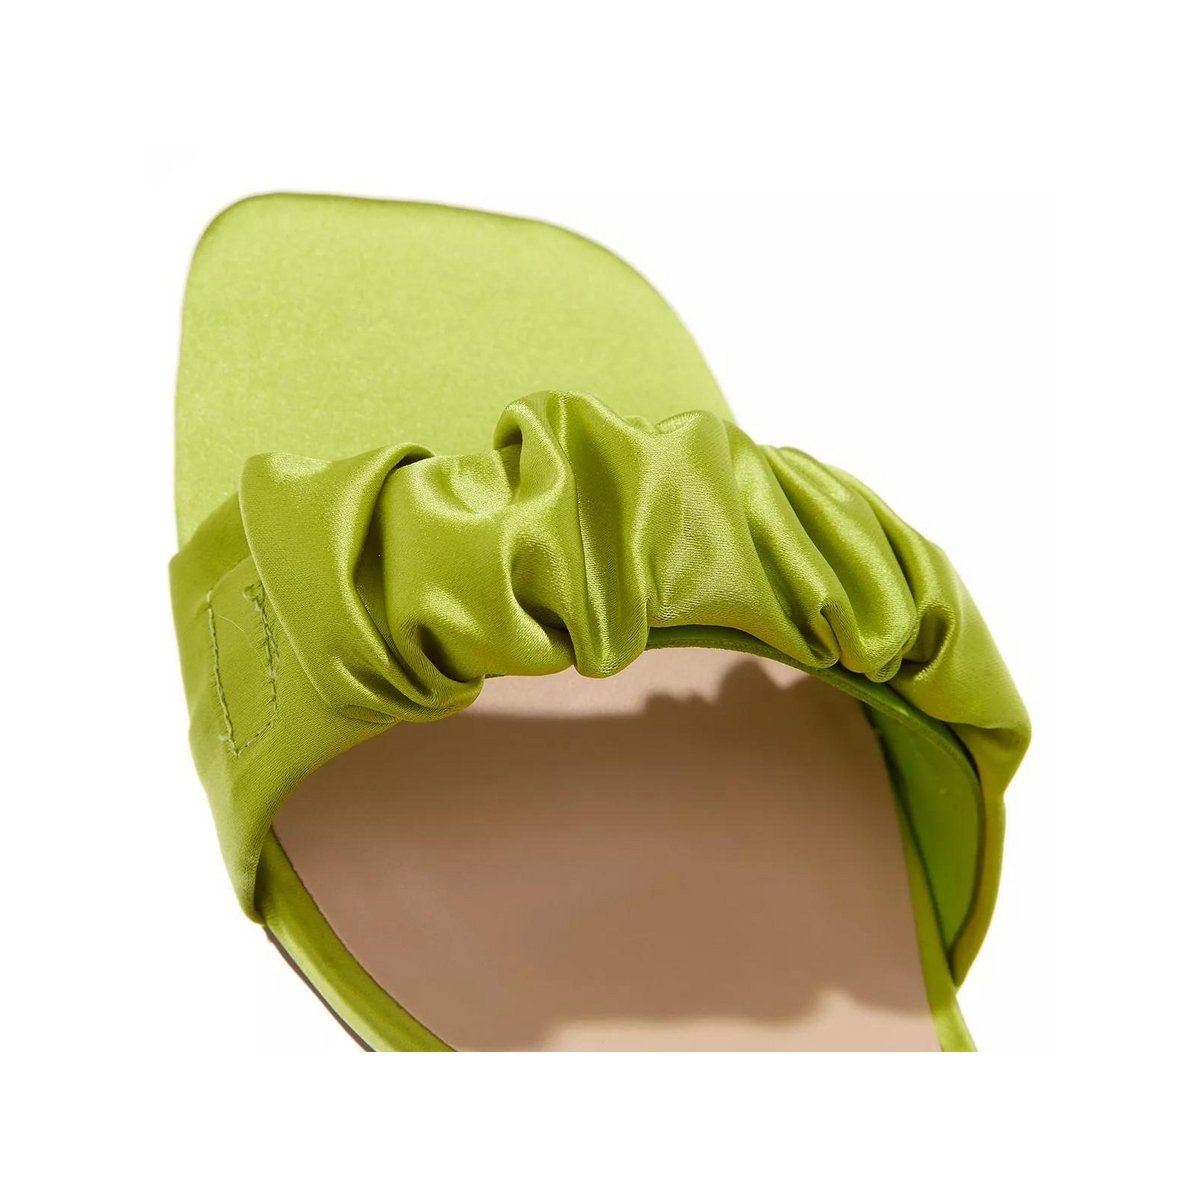 STEVE MADDEN grün Sandalette (1-tlg)